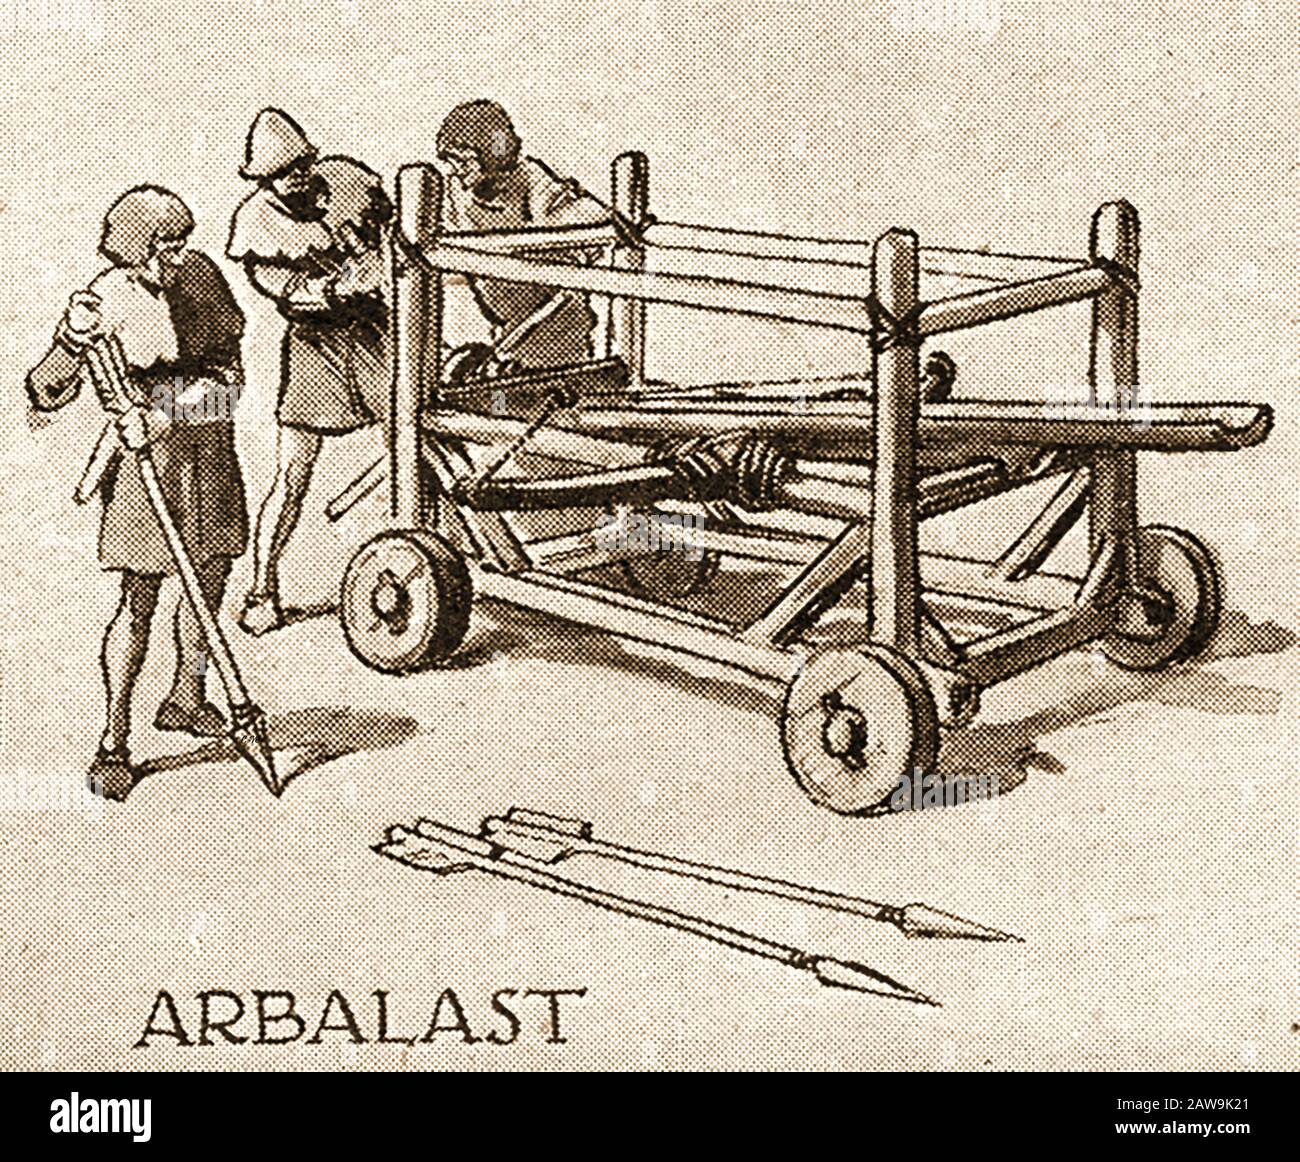 Un'illustrazione degli anni '40 che mostra le armi storiche di battaglia - l'Arbalast /Arblast / Arbalist o arbalest era una macchina di tiro con arco trasversale, in questo caso una versione per impieghi pesanti per l'uso sul campo di battaglia completo di bulloni giganti o frecce. Foto Stock